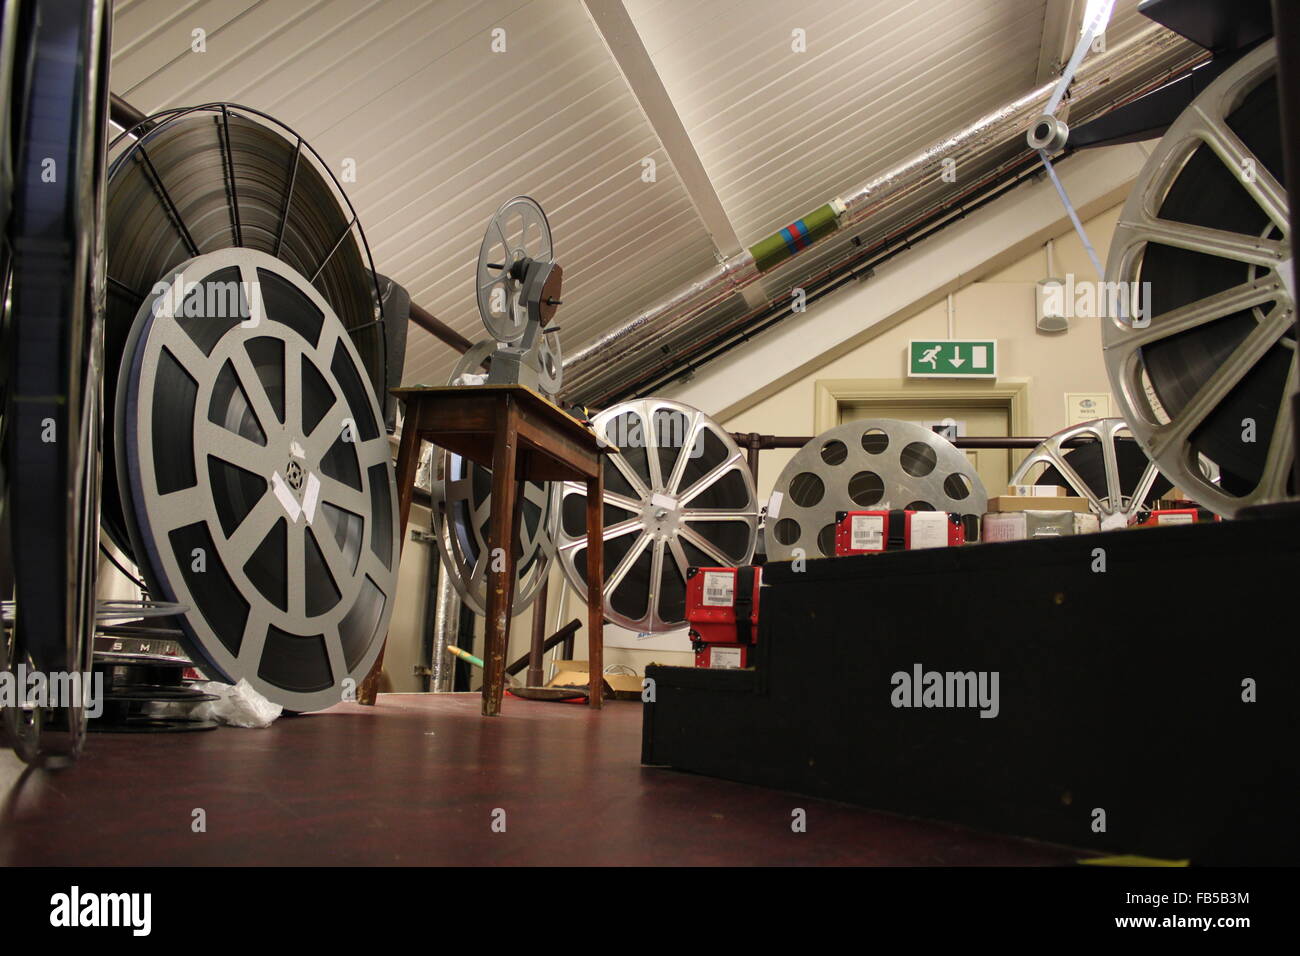 Basso livello immagine di numerosi 35mm bobine di pellicola in una sala di proiezione Foto Stock